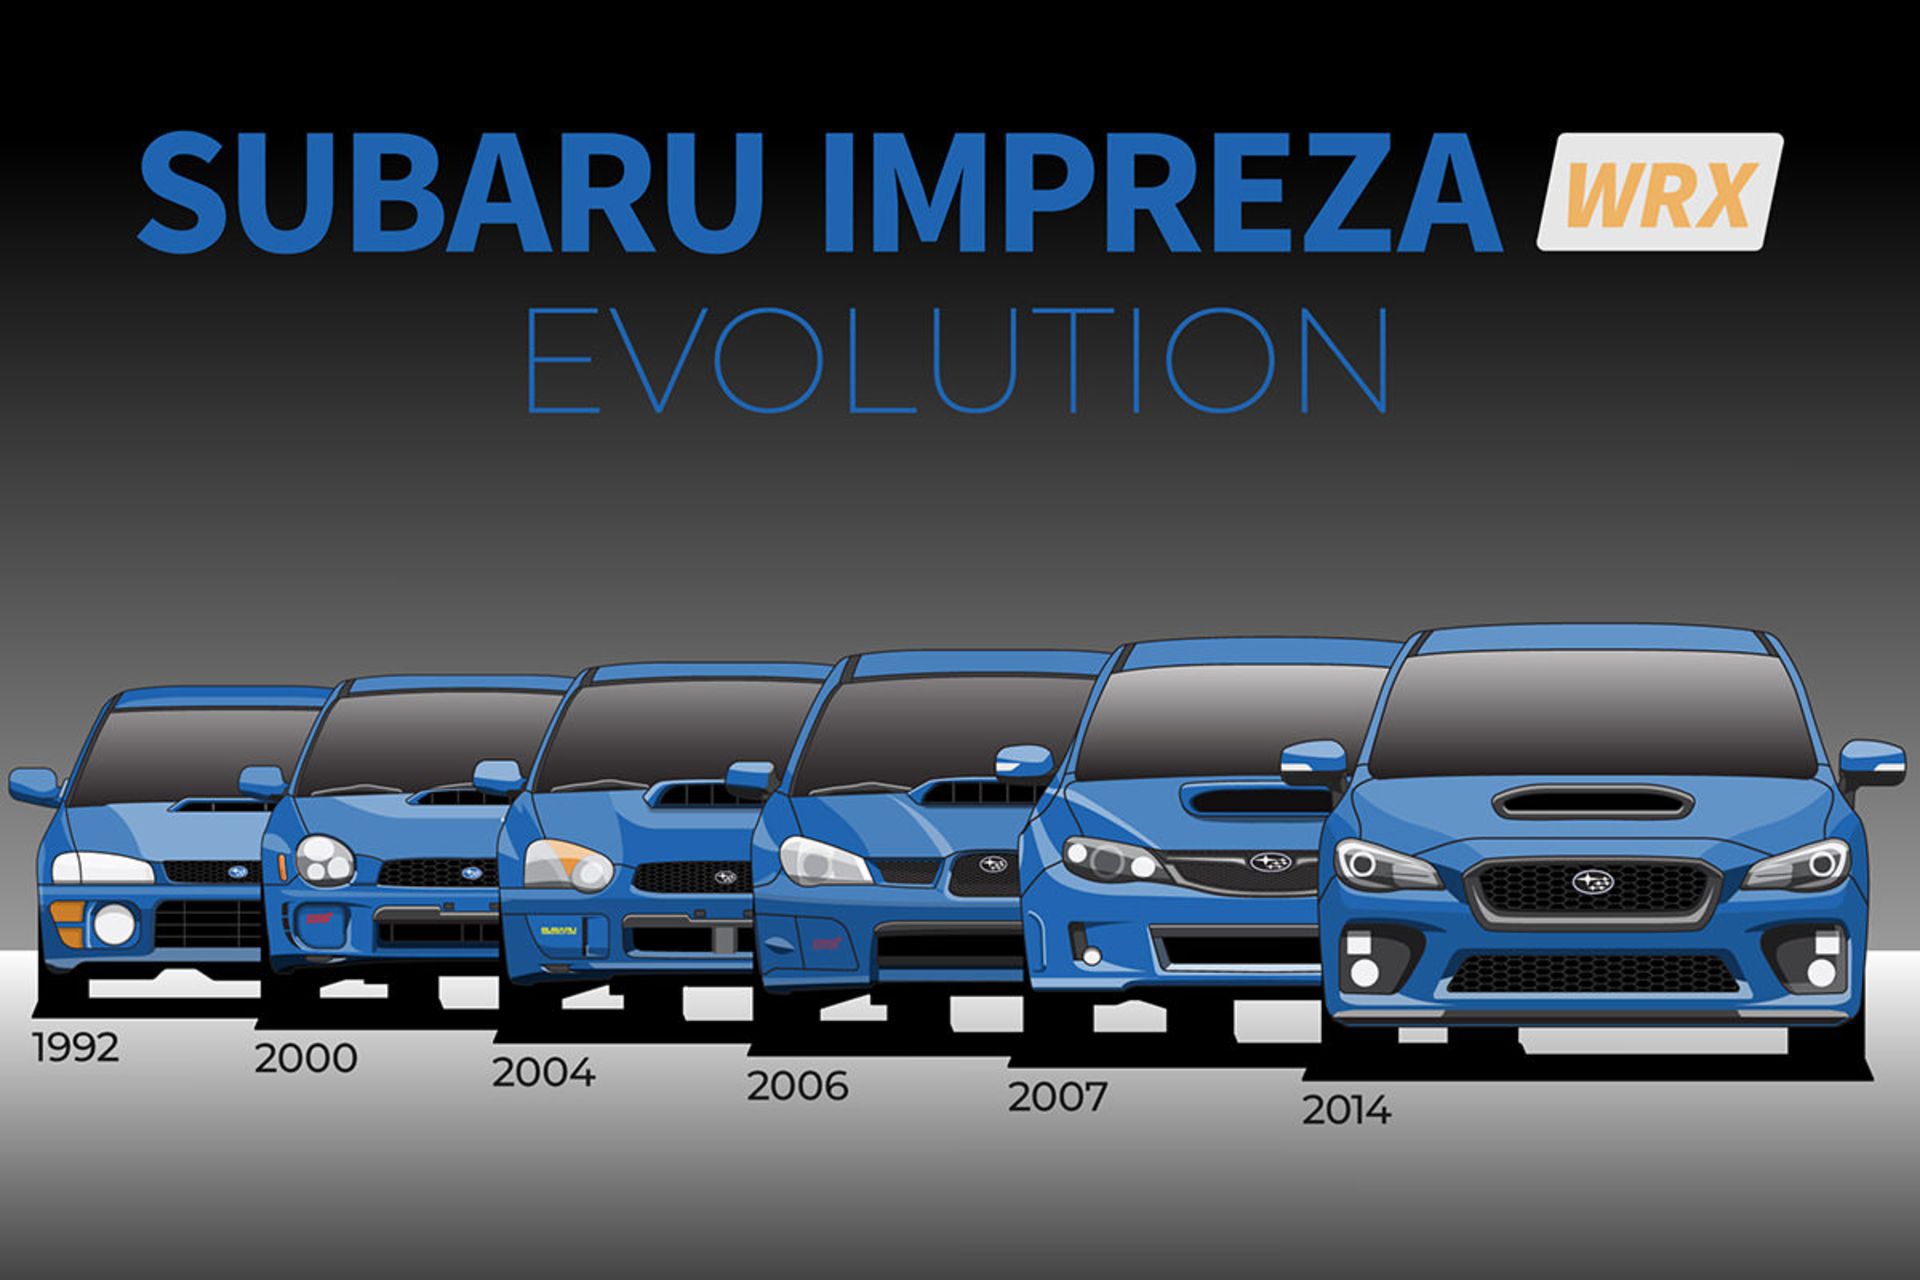 تغییر نسل خودرو سوبارو ایمپرزا / Subaru Impreza evolution